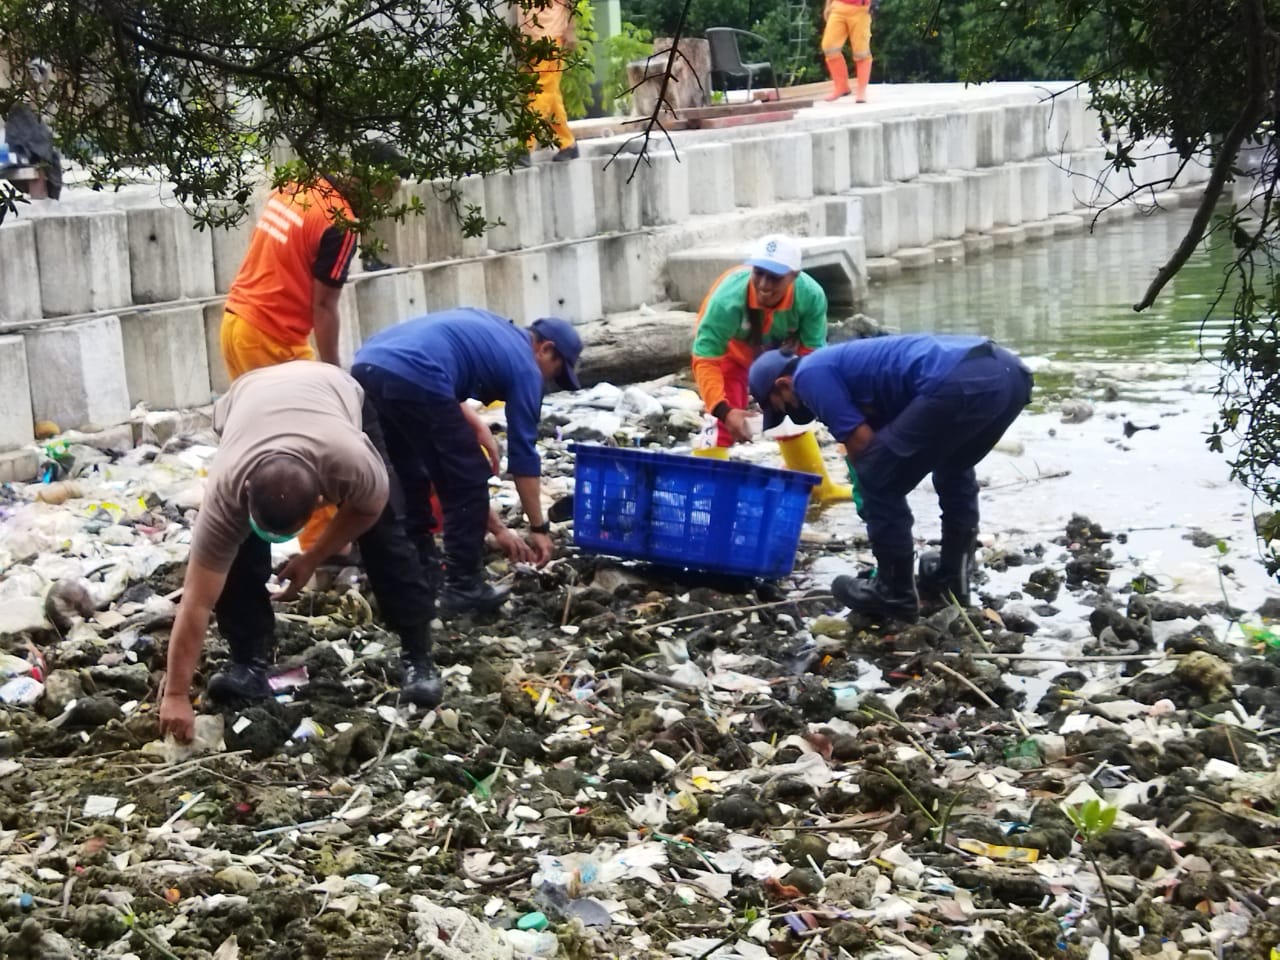 Bersama Warga, Polisi Berantas Sampah Plastik Di Pinggir Pantai Pulau Harapan